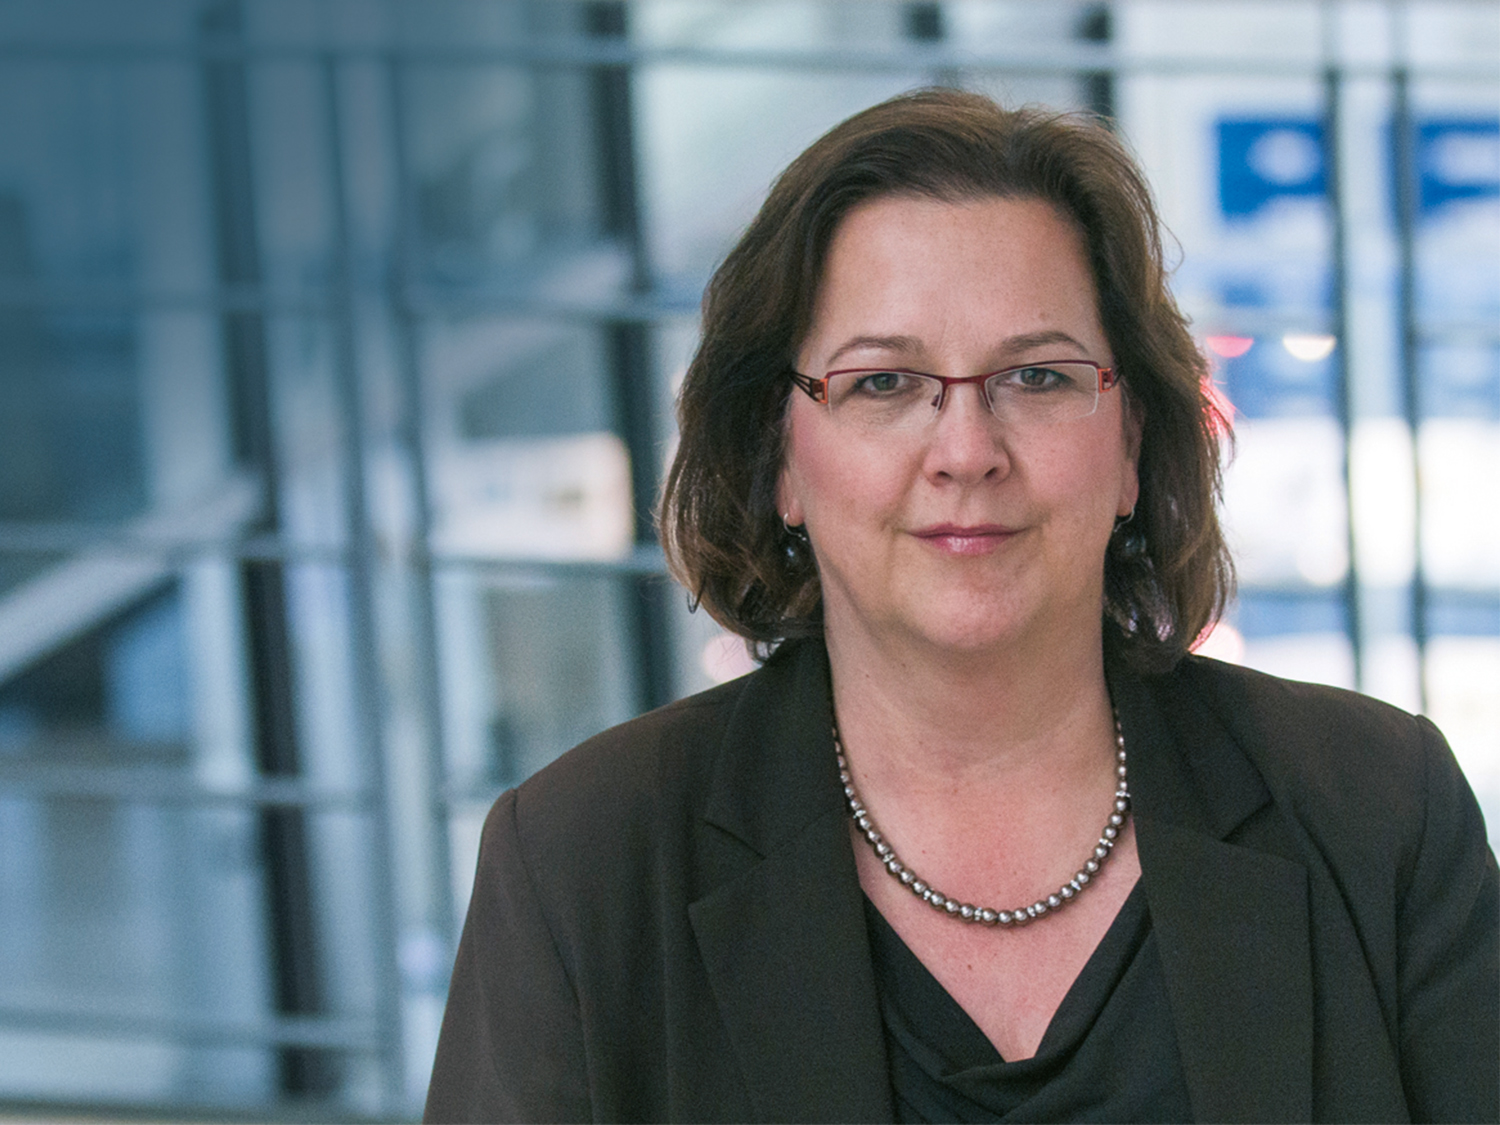 Die erste Präsidentin der Deutschen Gesellschaft für Materialkunde e.V. (DGM) heißt Prof. Martina Zimmermann. Sie tritt das Amt am 1. Januar 2021 an.